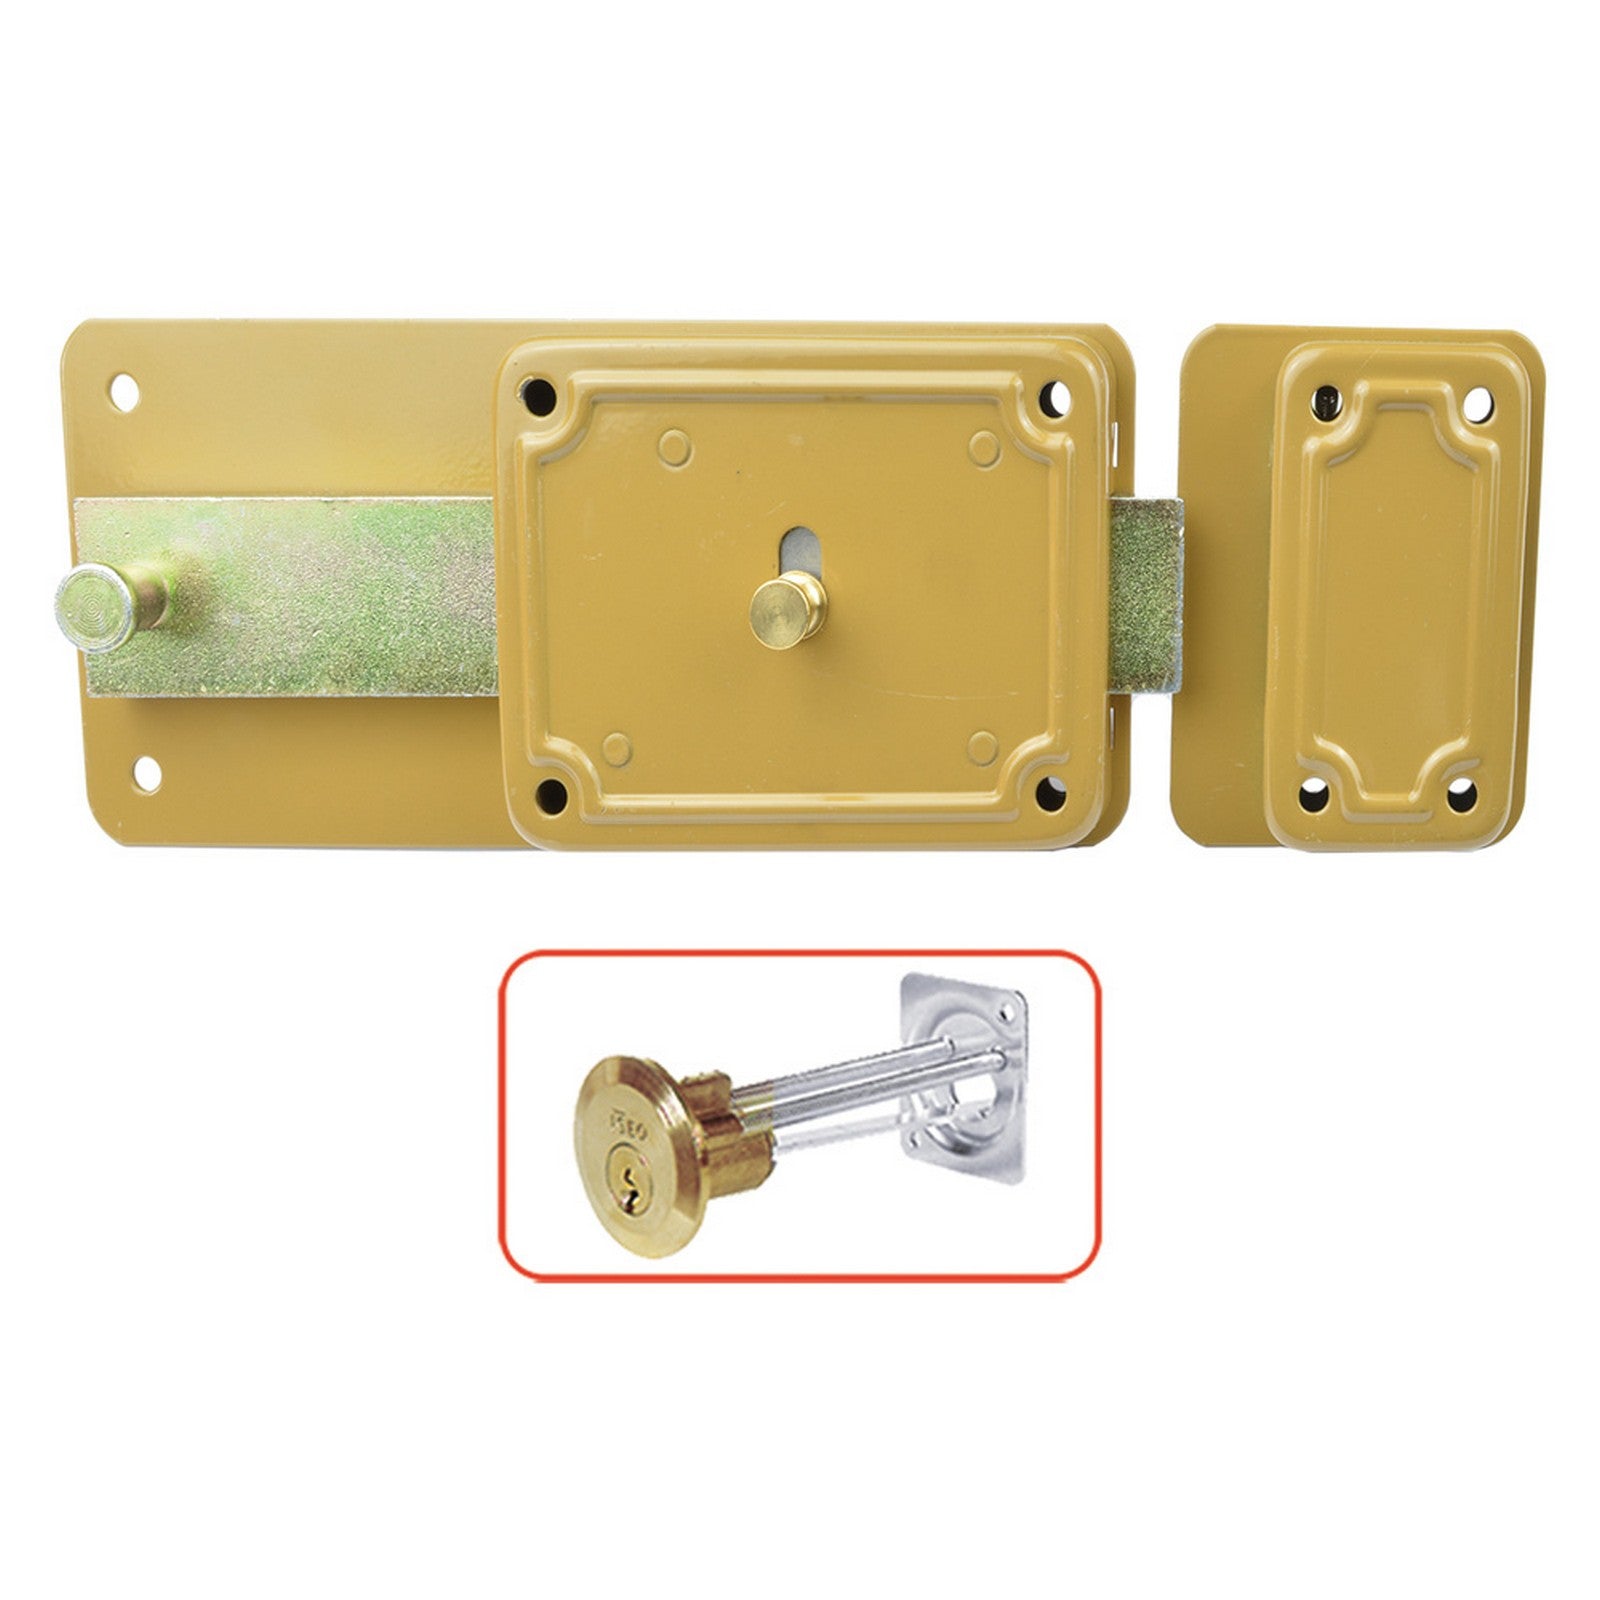 2pz serratura ferroglietto 'p-cs' p60 - 6 mandate e70 dx solo catenaccio cod:ferx.3019916nlm